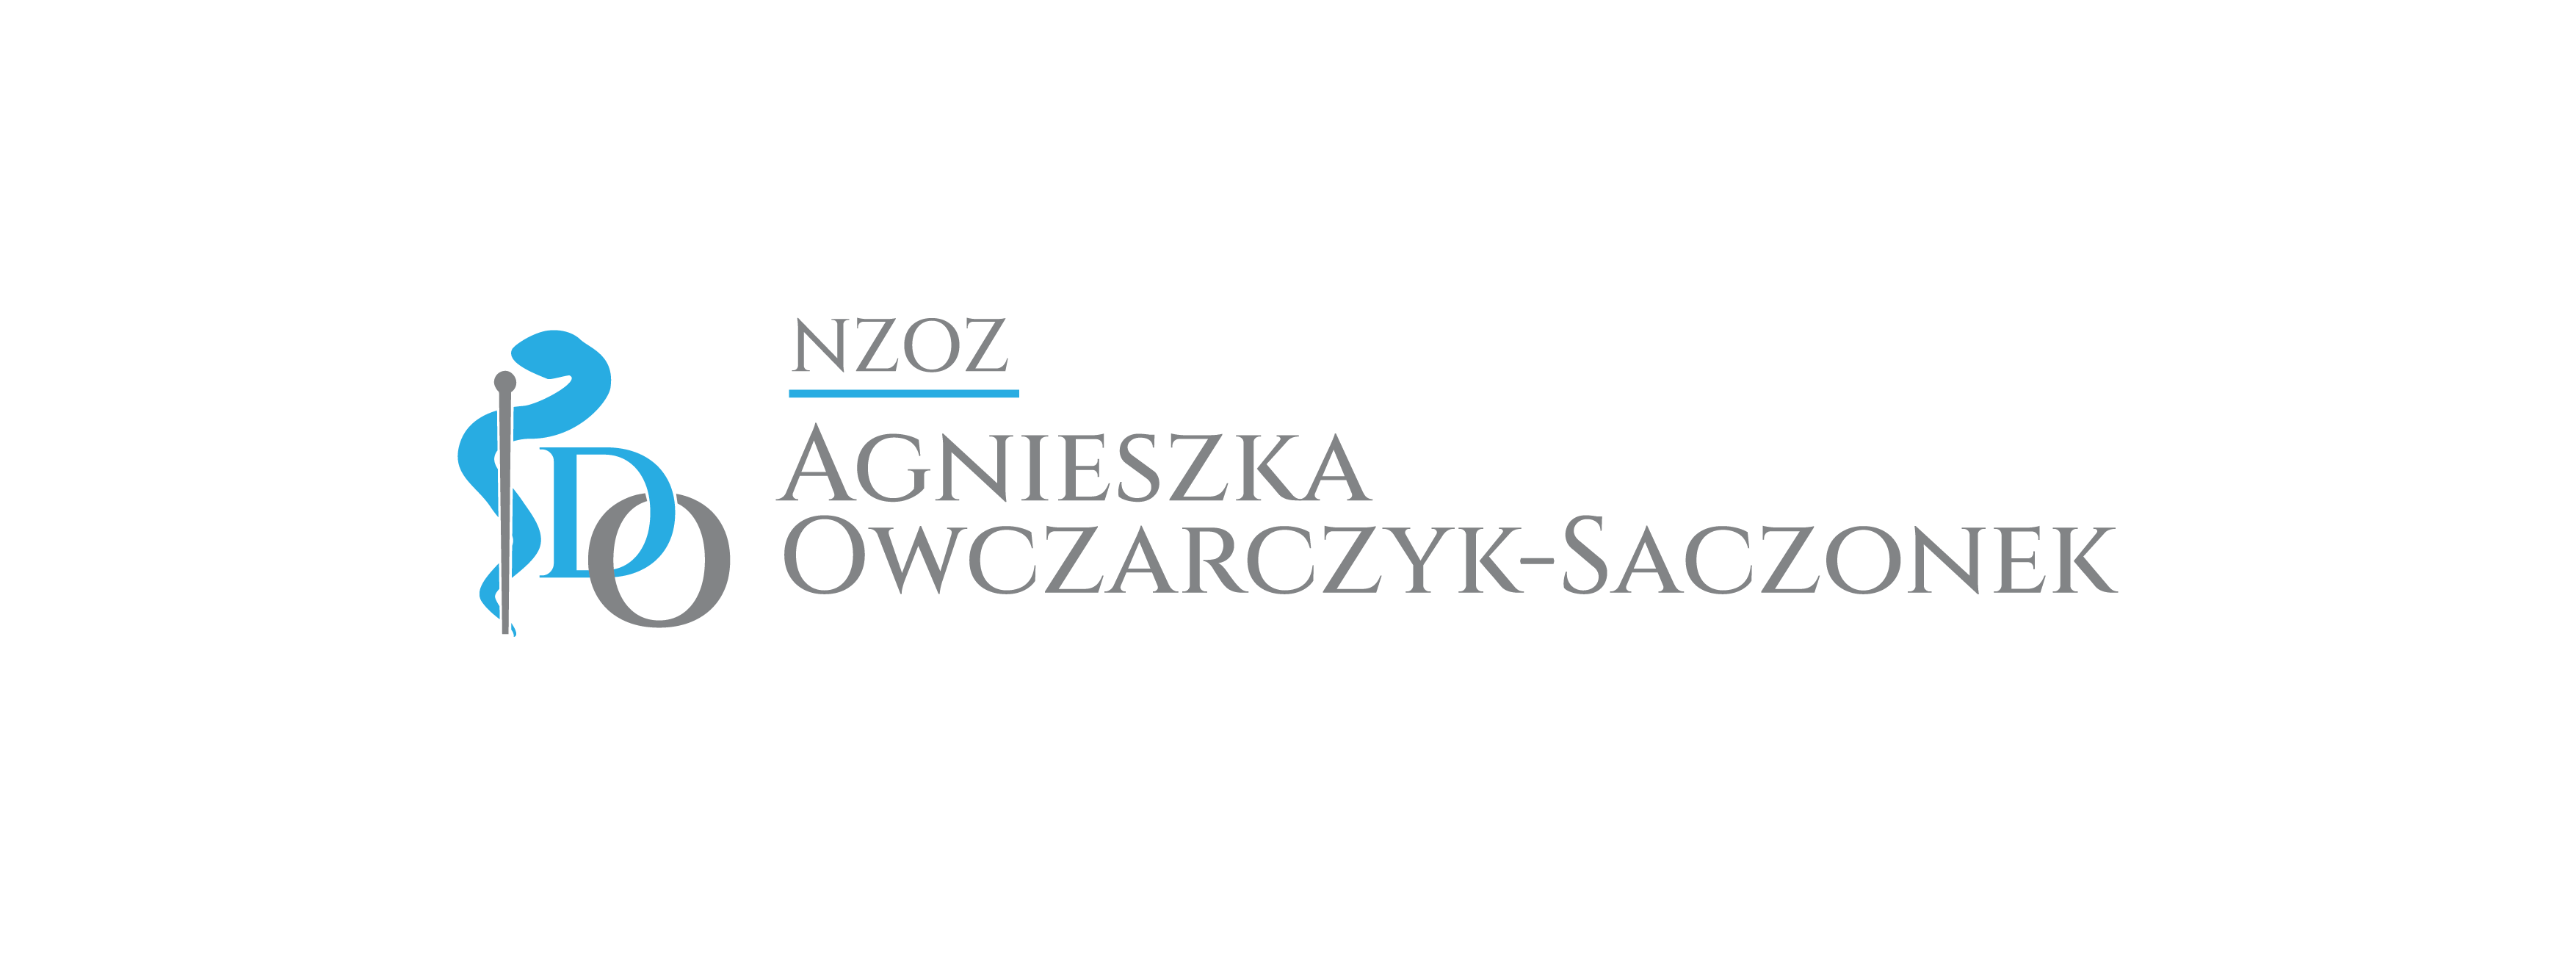 specjalista dermatolog wenerolog Agnieszka Owczarczyk-Saczonek logo